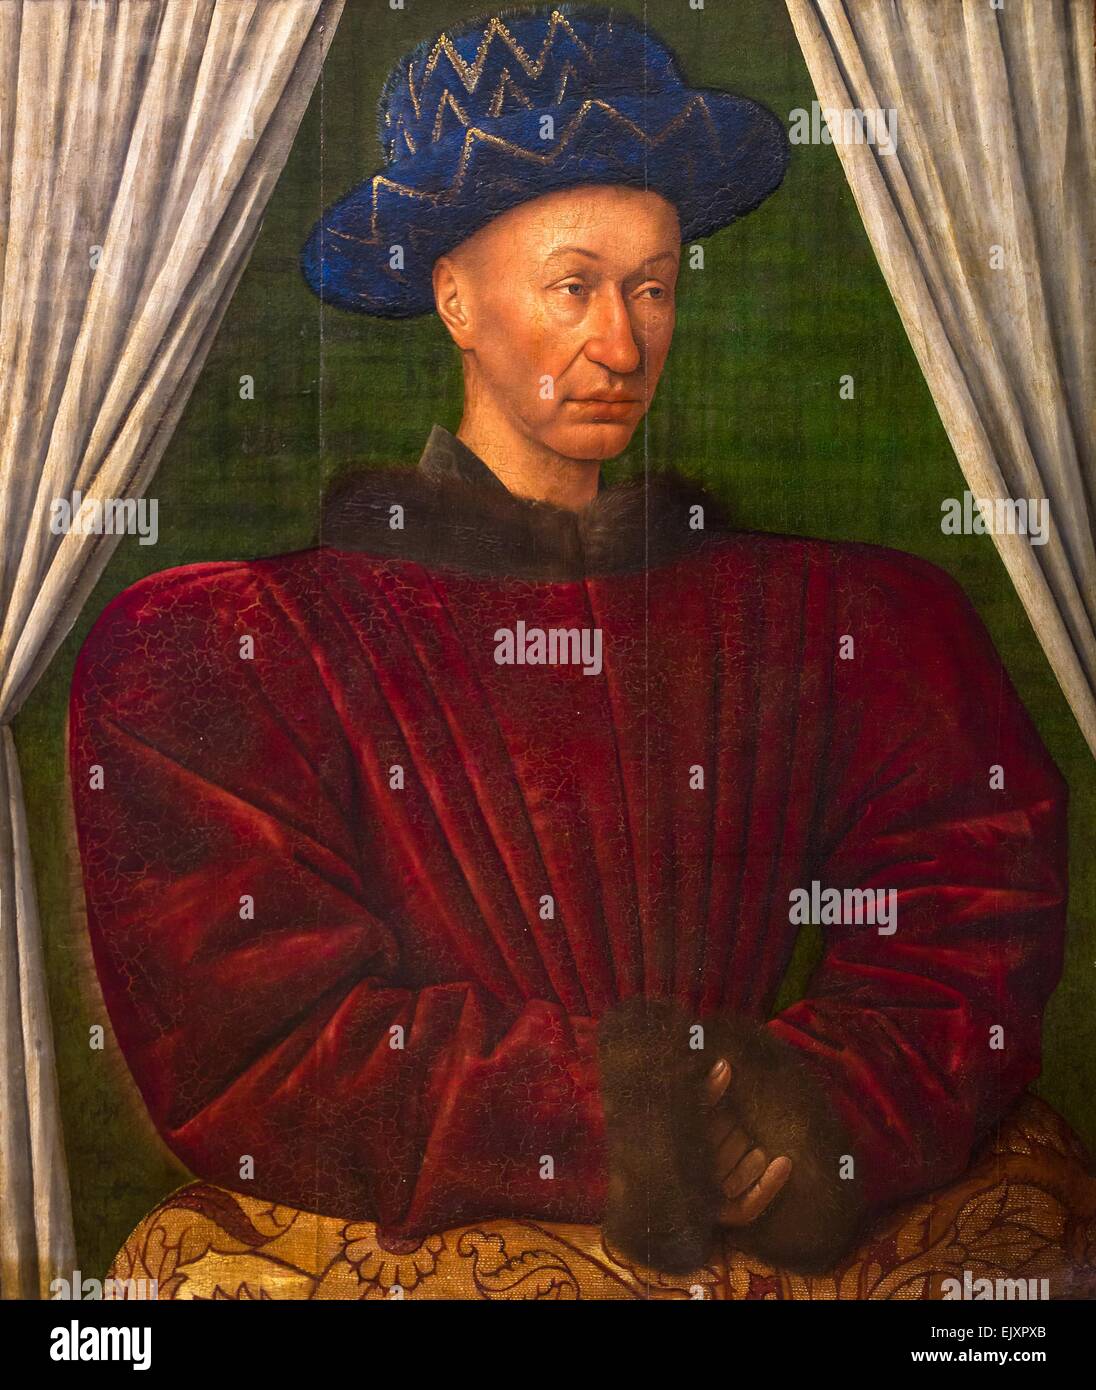 ActiveMuseum 0001965.jpg / Charles VII, roi de France, ca 1445 - Jean Fouquet 26/09/2013 - Moyen Âge / Collection / Musée actif Banque D'Images